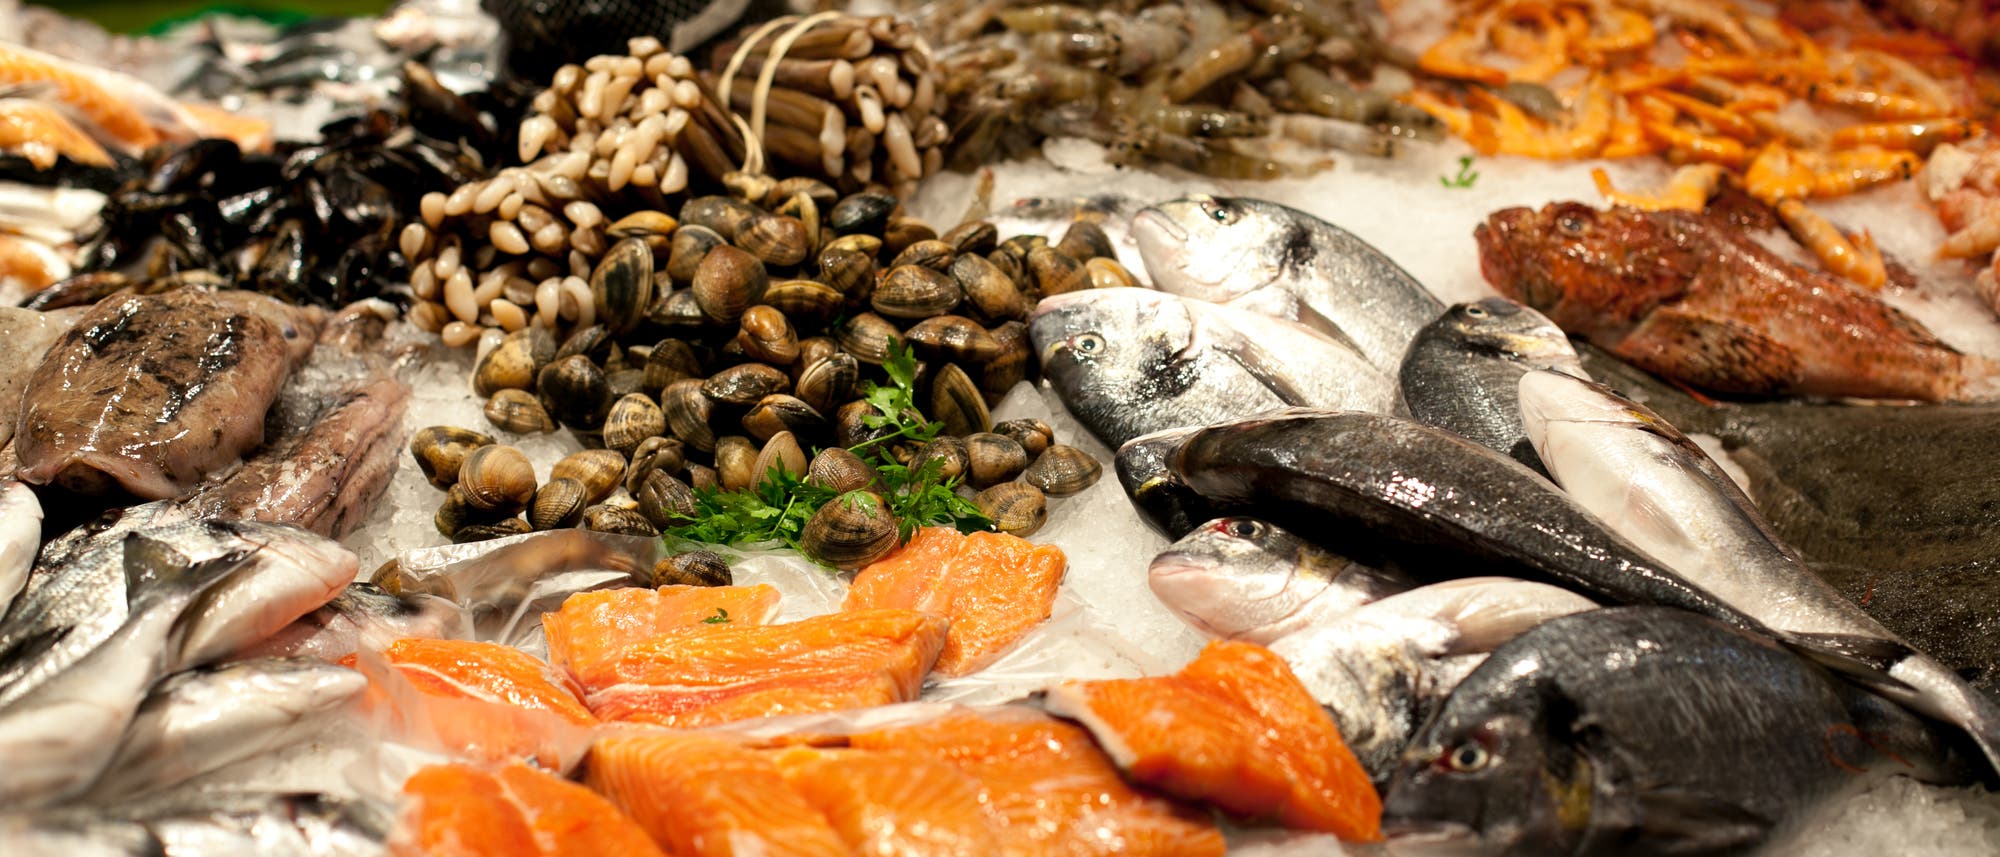 Fisch und Meeresfrüchte auf einem Markt in Spanien.